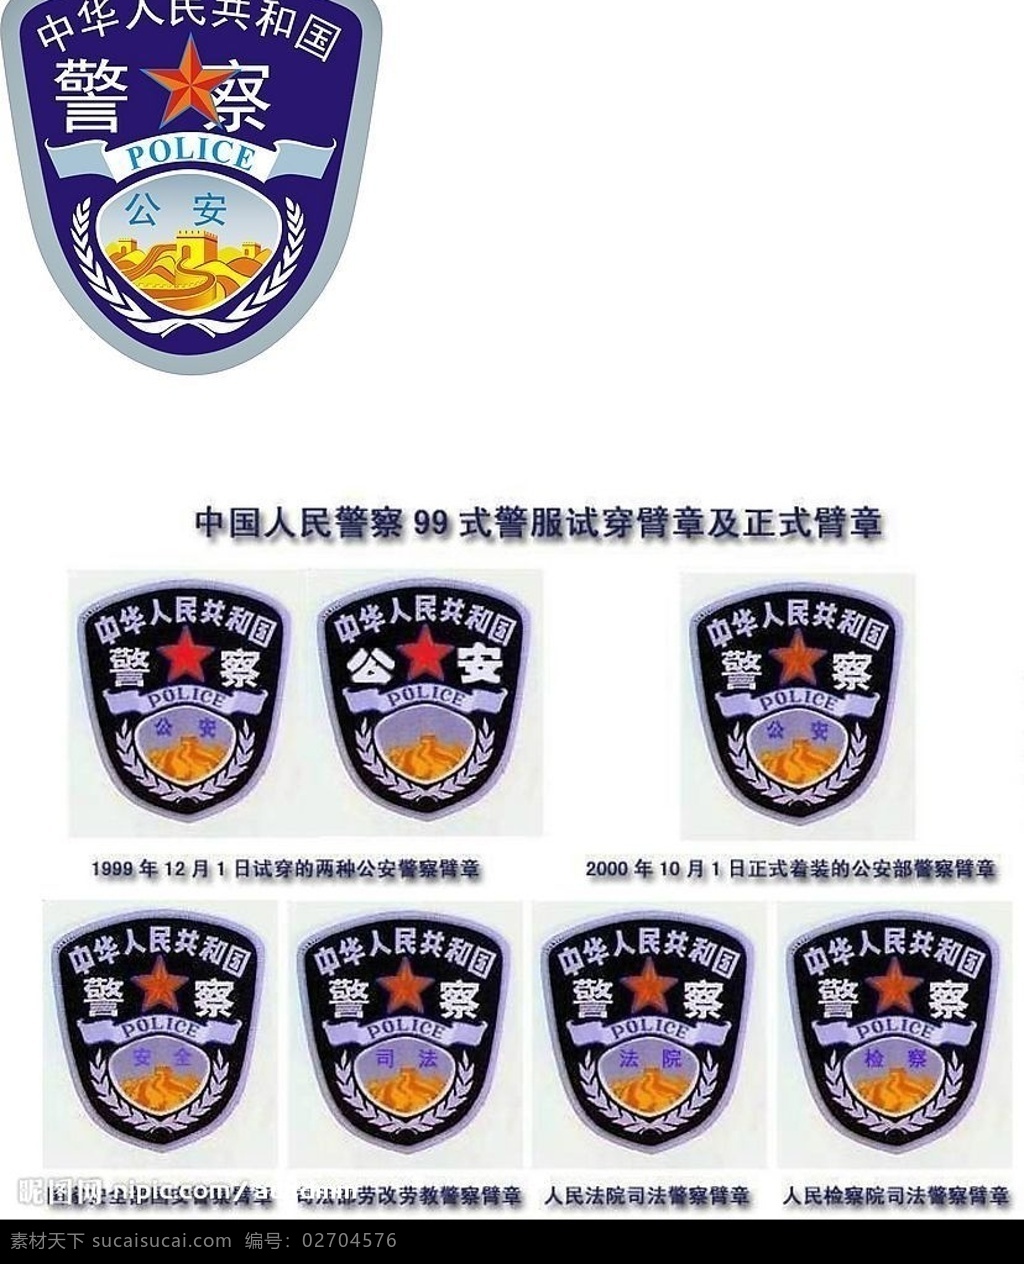 中国 警察 臂章 矢量图 标志 警察臂章 标识标志图标 公共标识标志 矢量图库